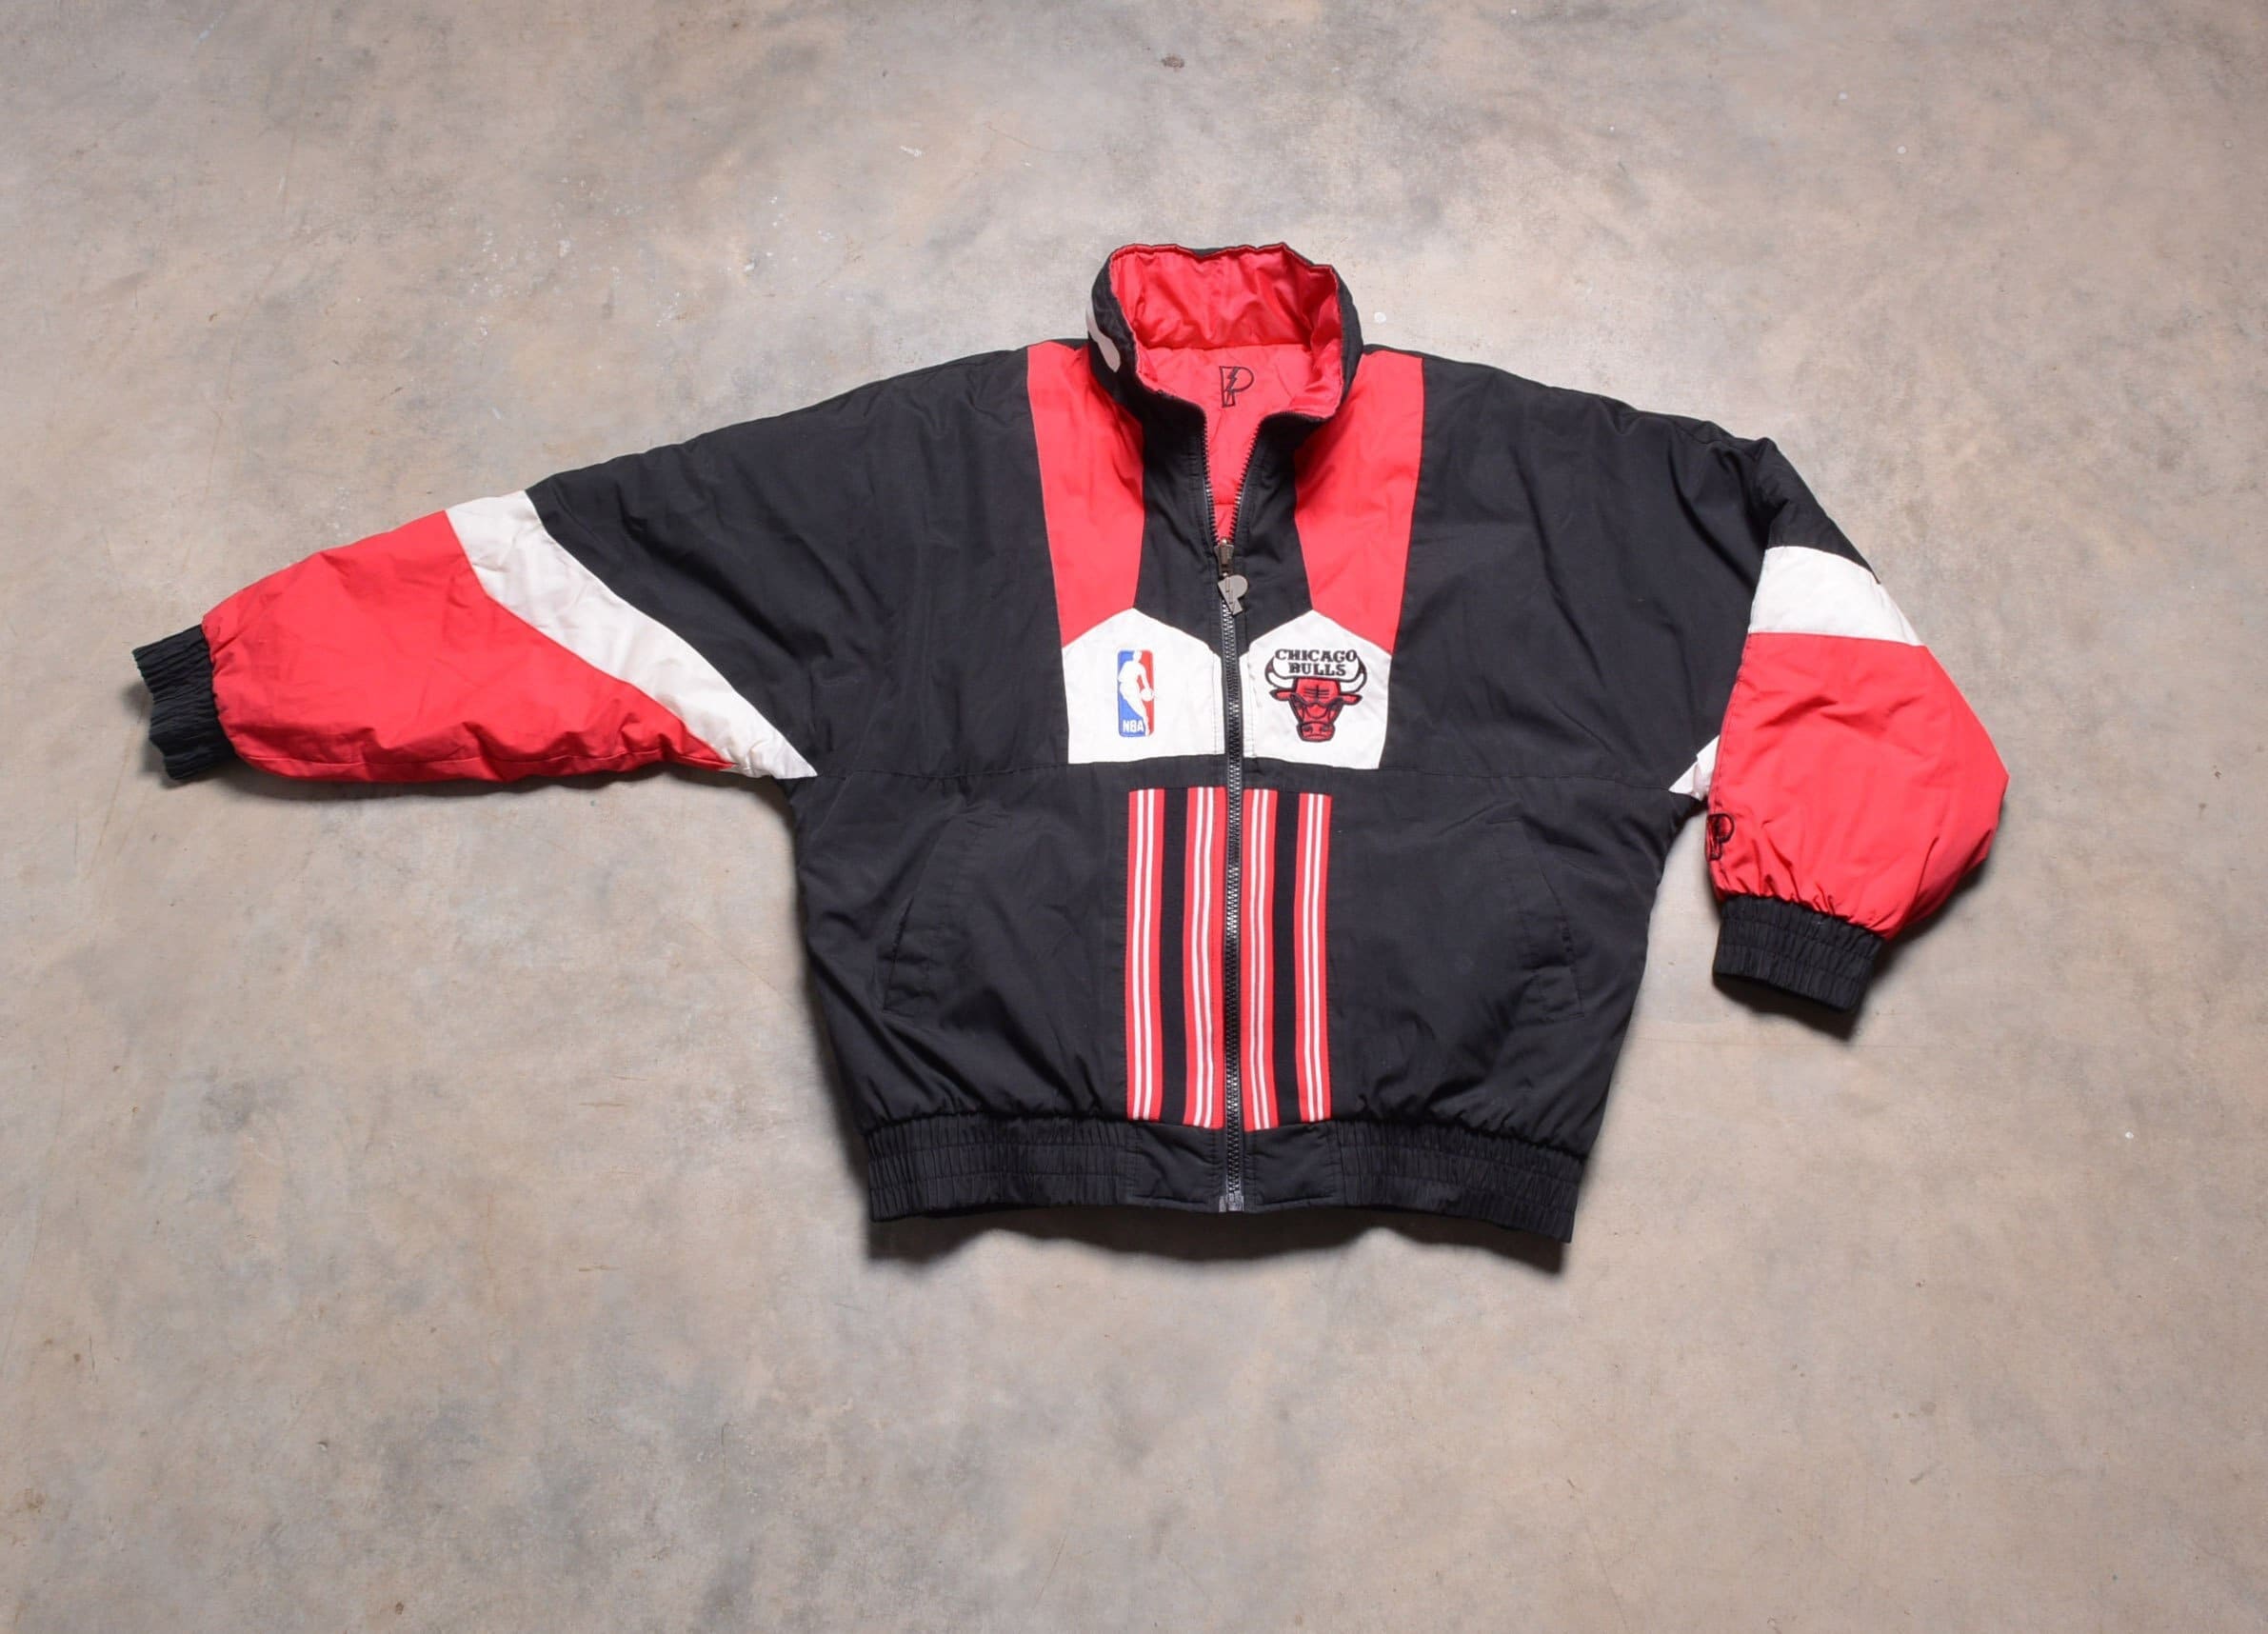 Vintage Starter Chicago Bulls NBA Satin Basketball Jacket Size XXXL 3X